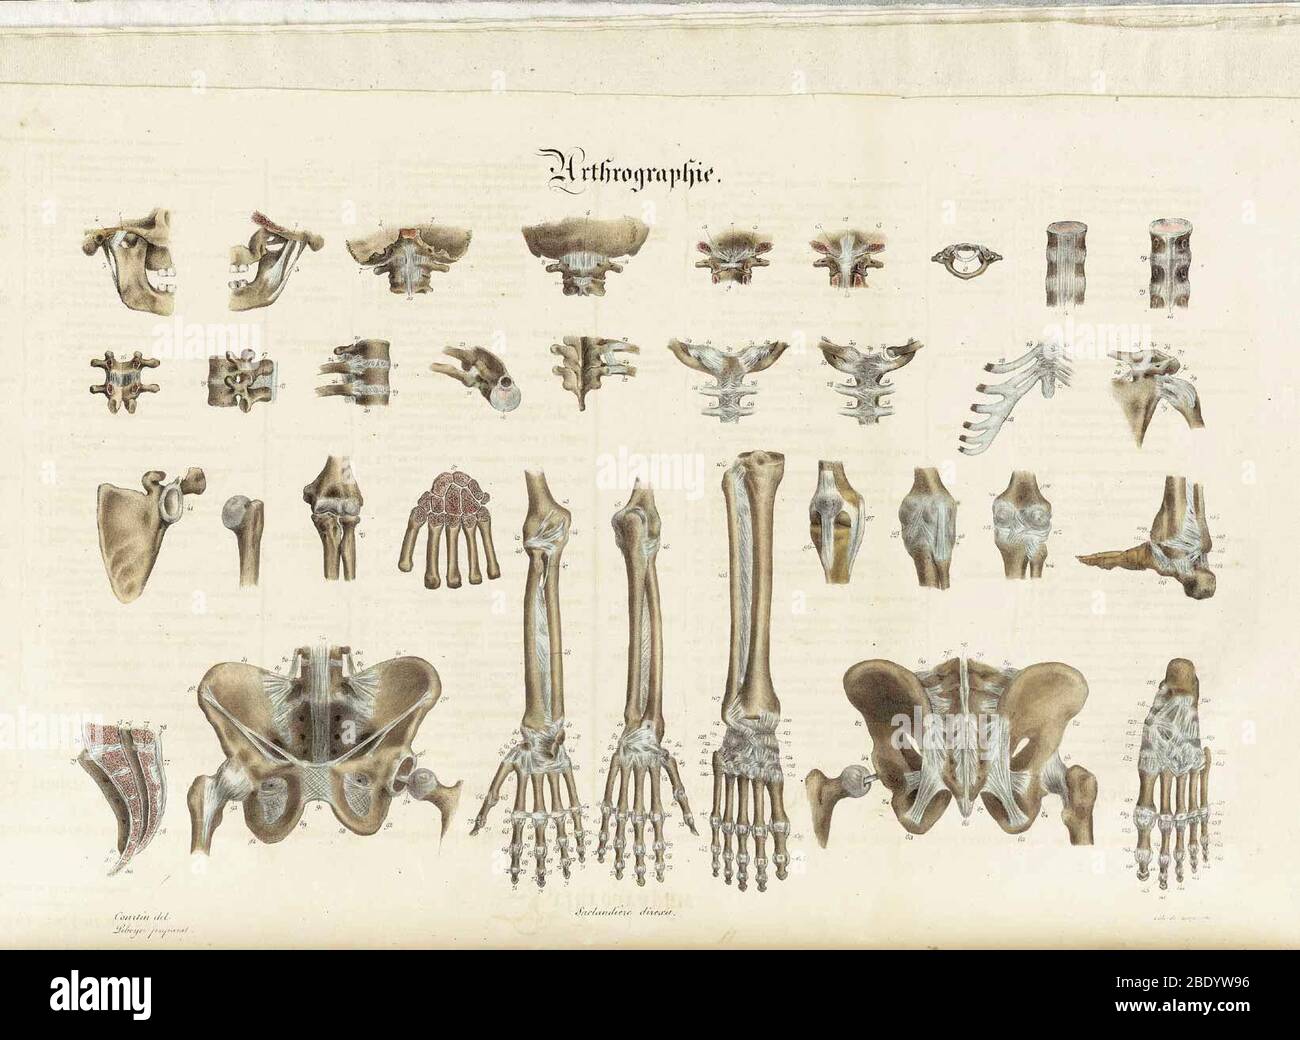 Illustrations de la méthodique anatomique Banque D'Images